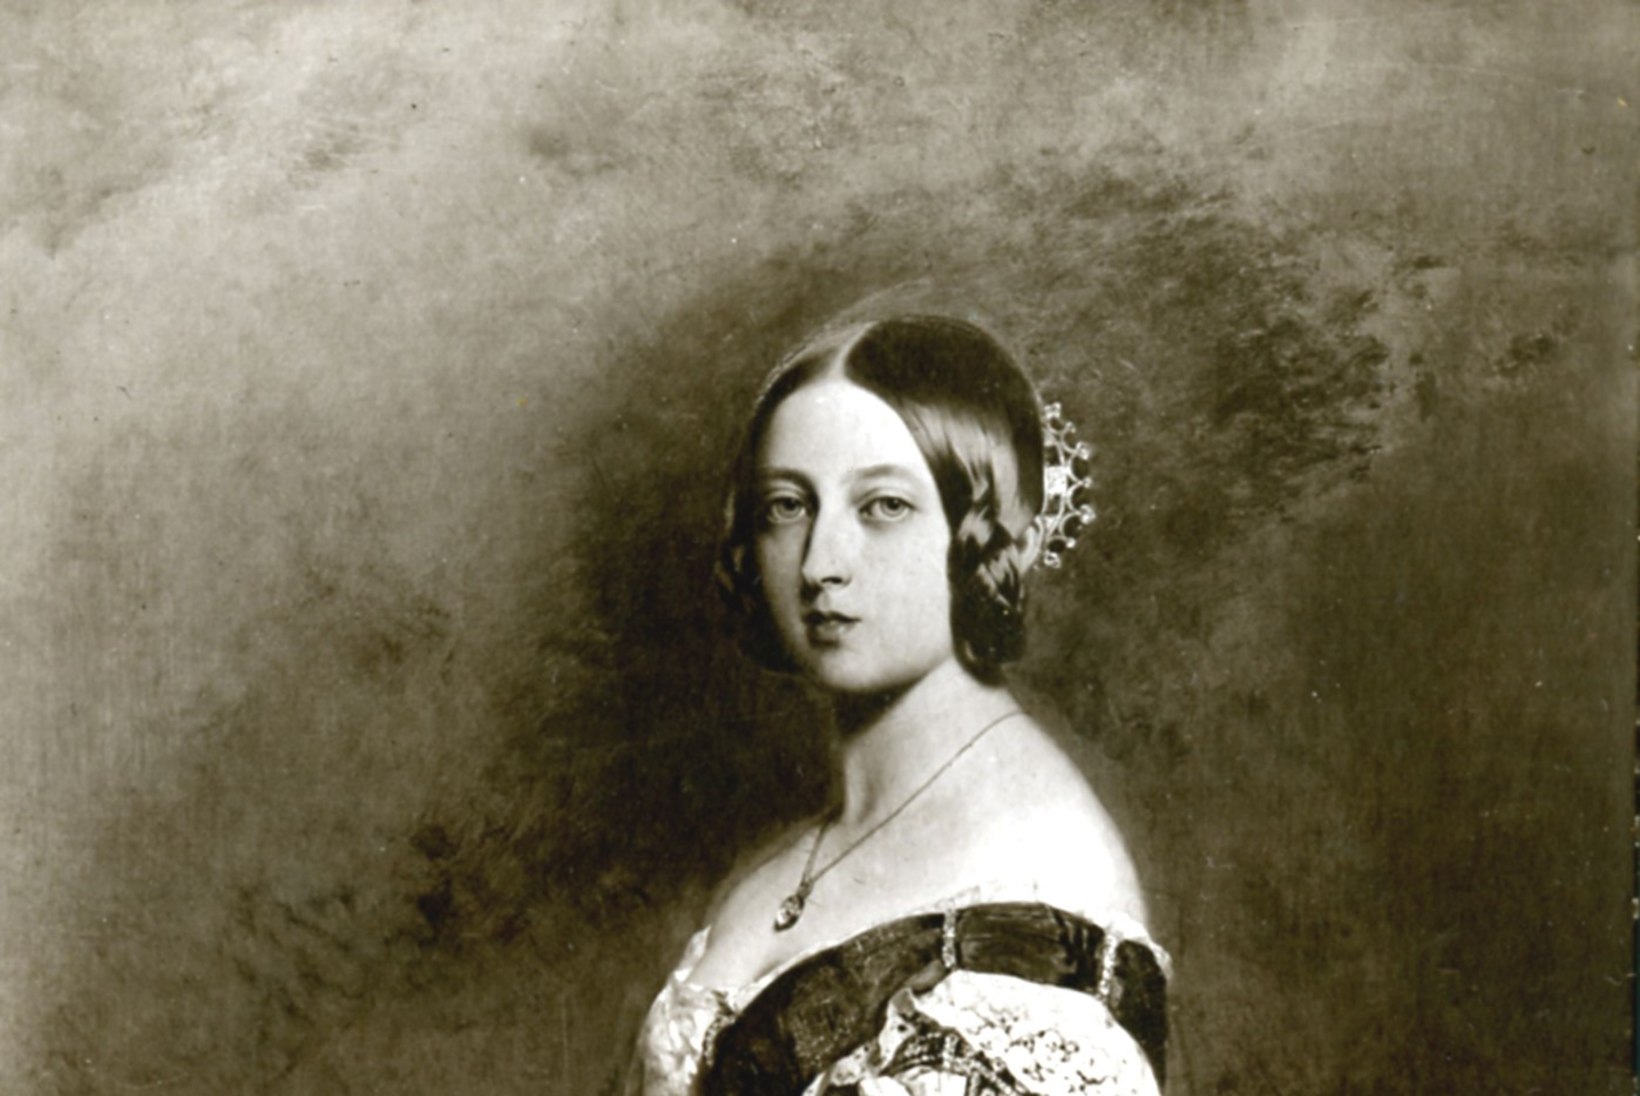 Telepublik nördinud: kuninganna Victoria osatäitja on liiga ilus!